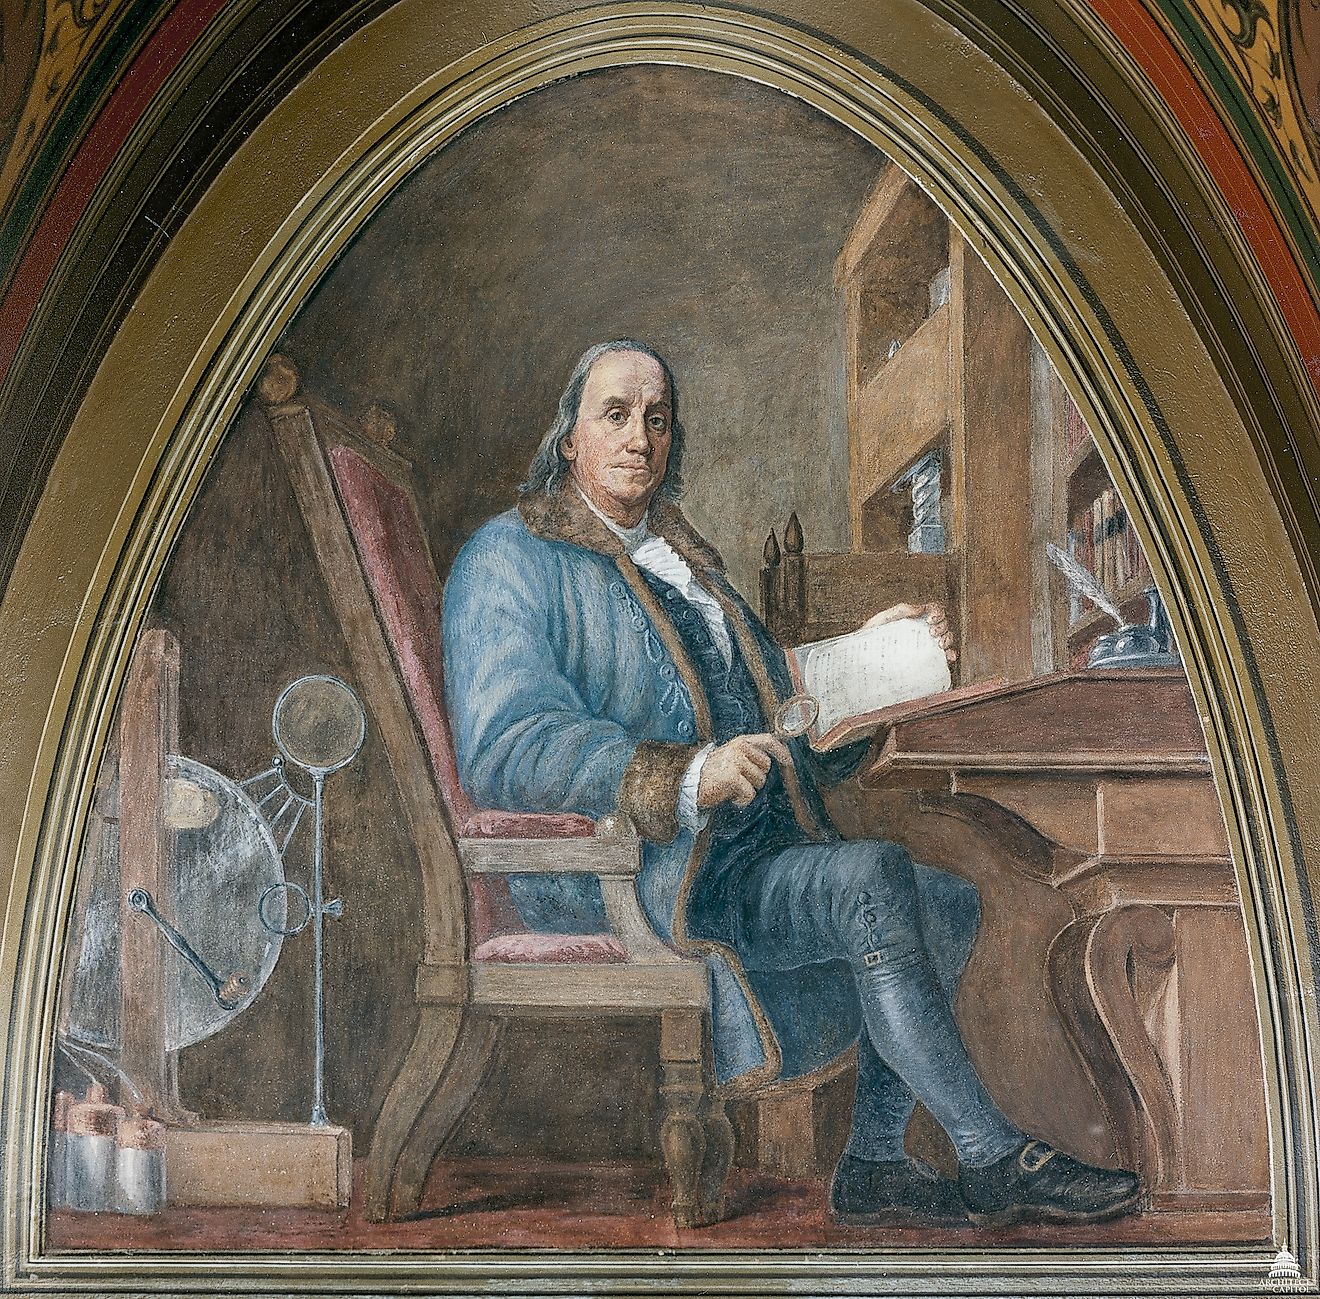 Benjamin Frankling. Image courtesy: USCapitol/Flickr.com